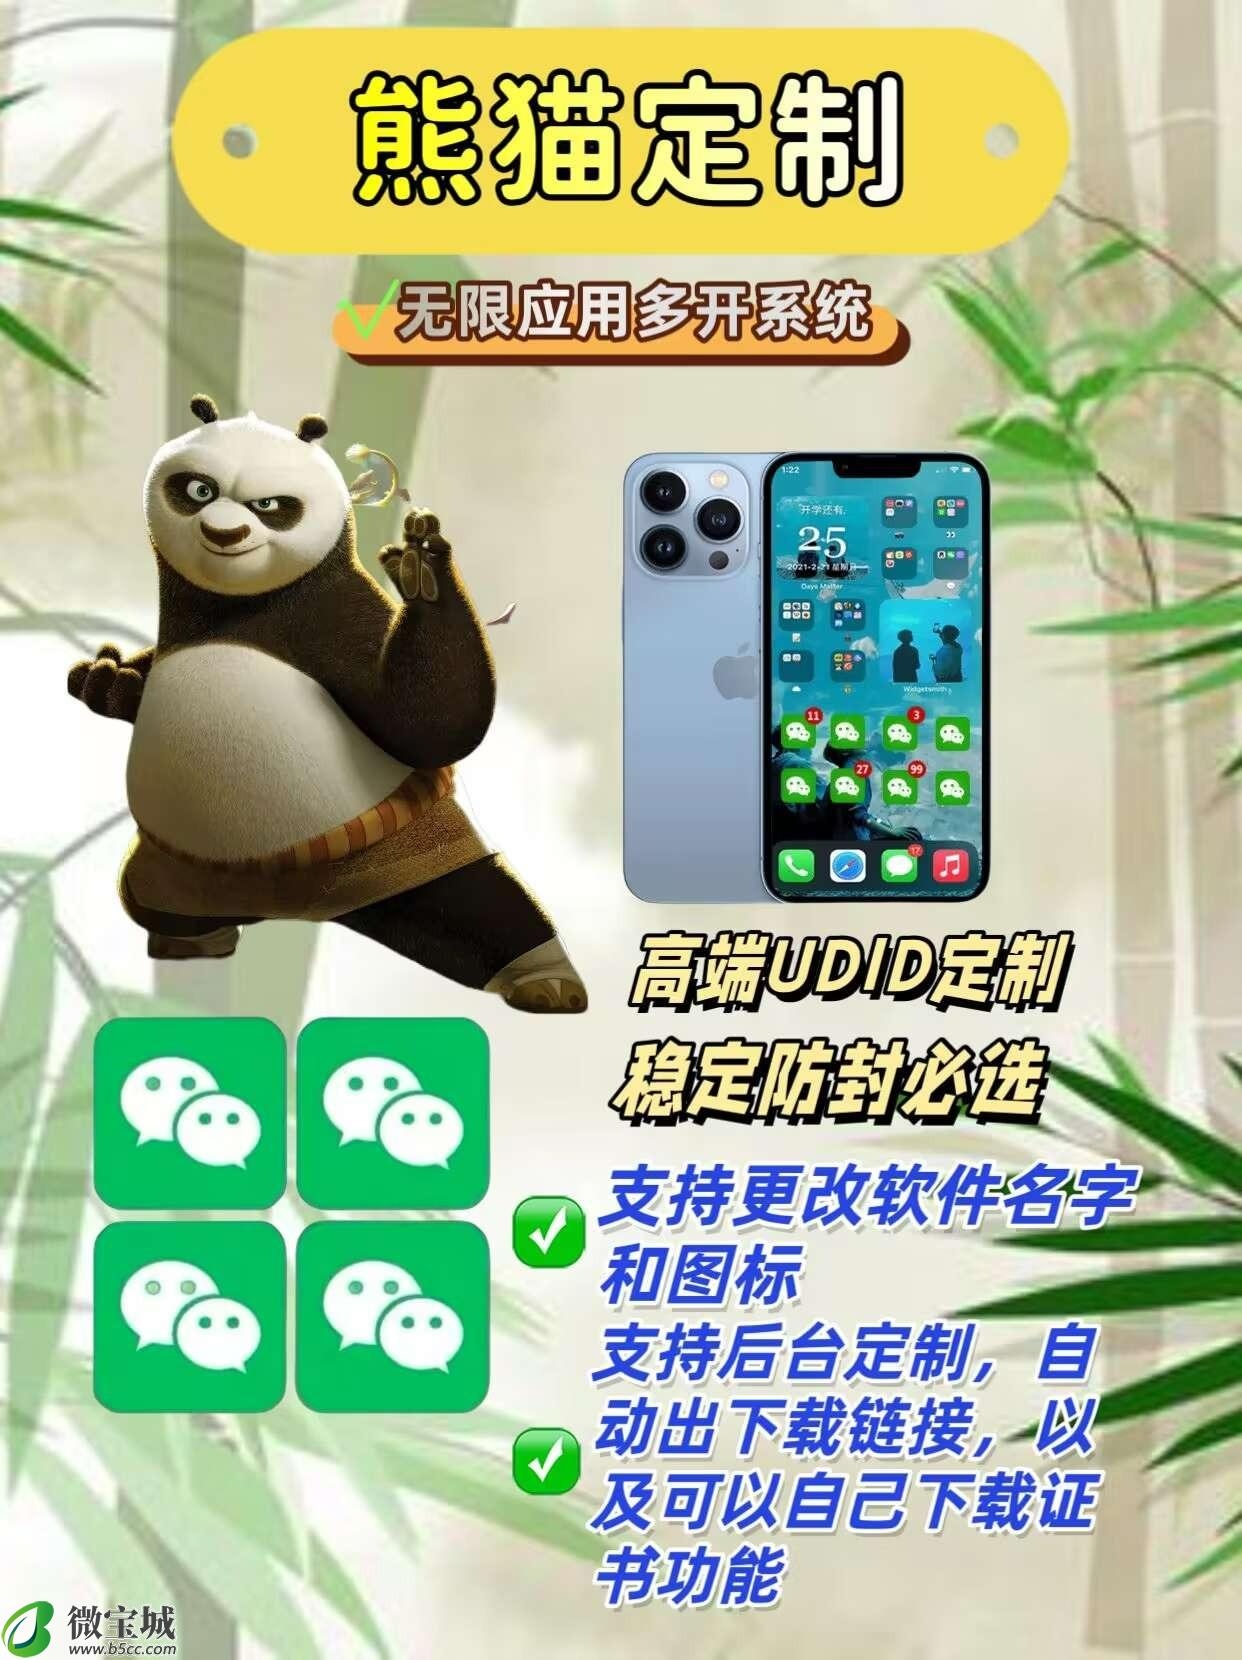 苹果熊猫定制激活码年卡